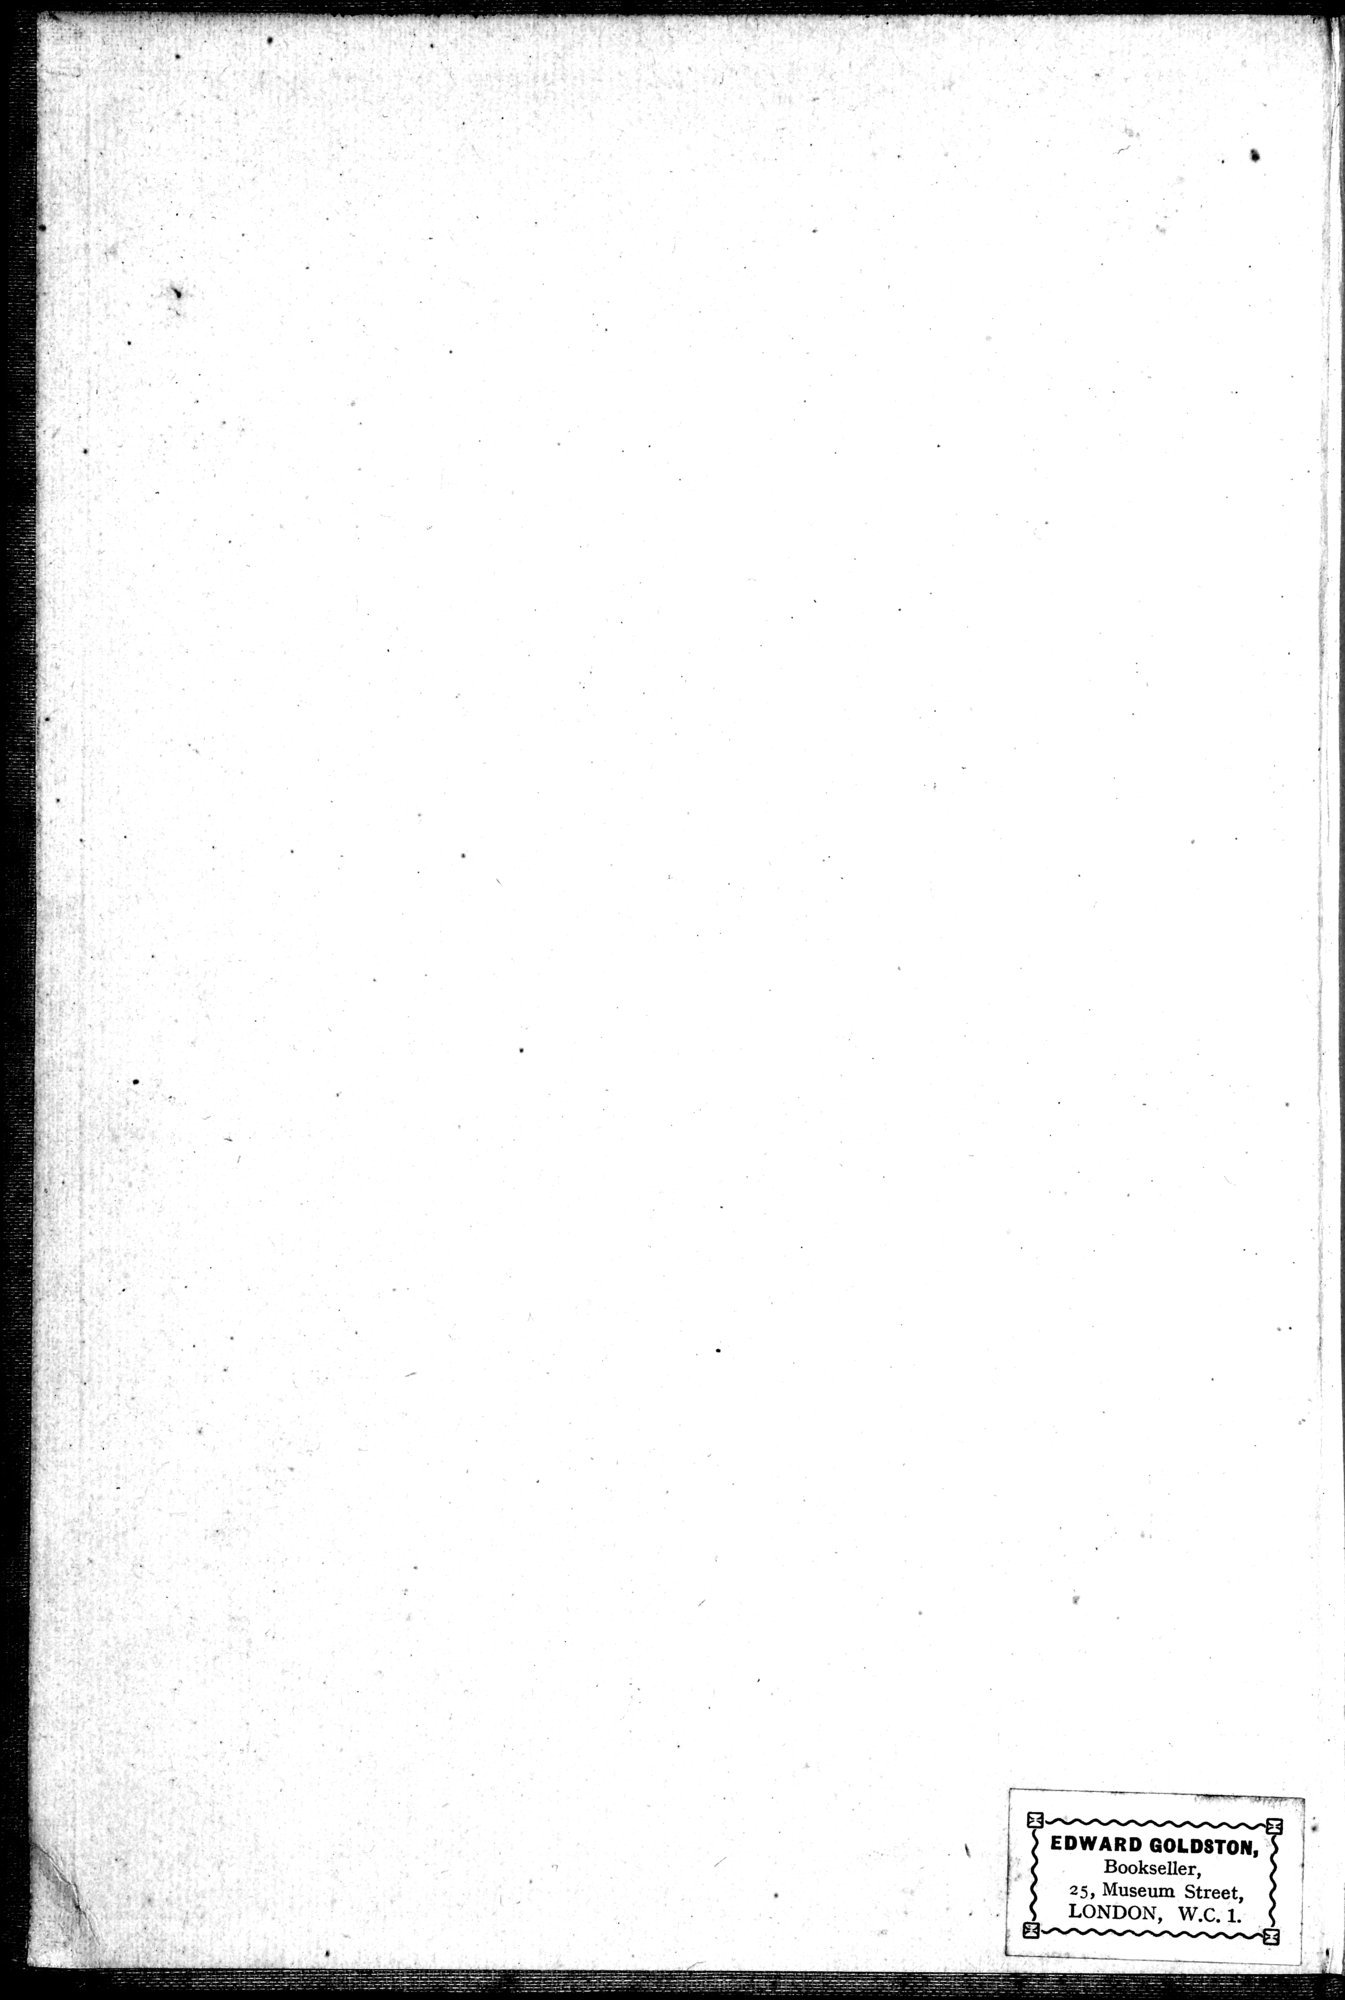 乾隆京城全図 : vol.8 / Page 2 (Grayscale High Resolution Image)